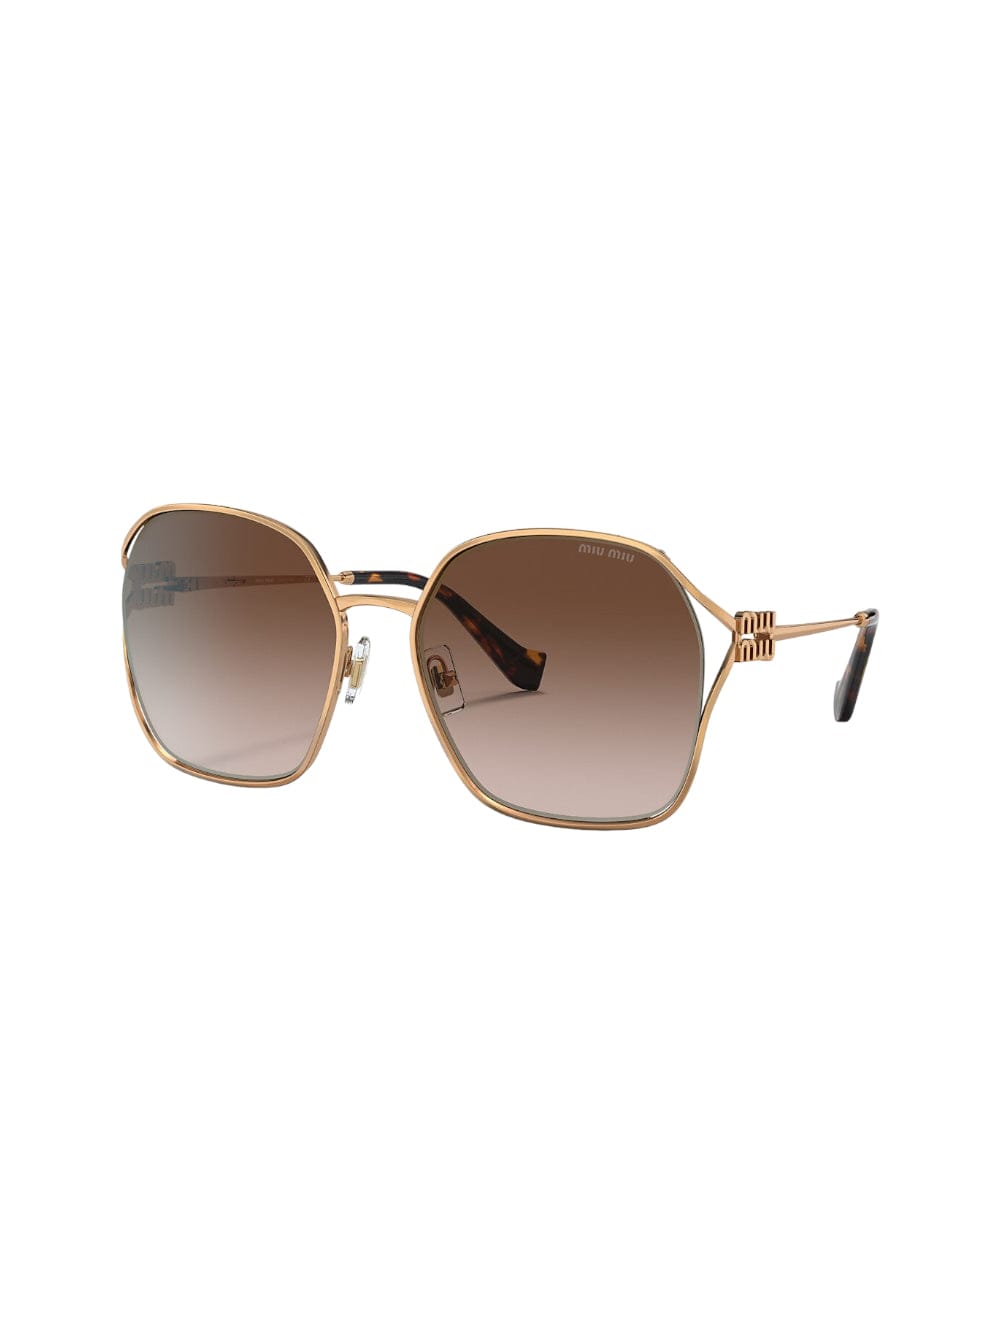 Shop Miu Miu 0mu 52ws - Gold Sunglasses